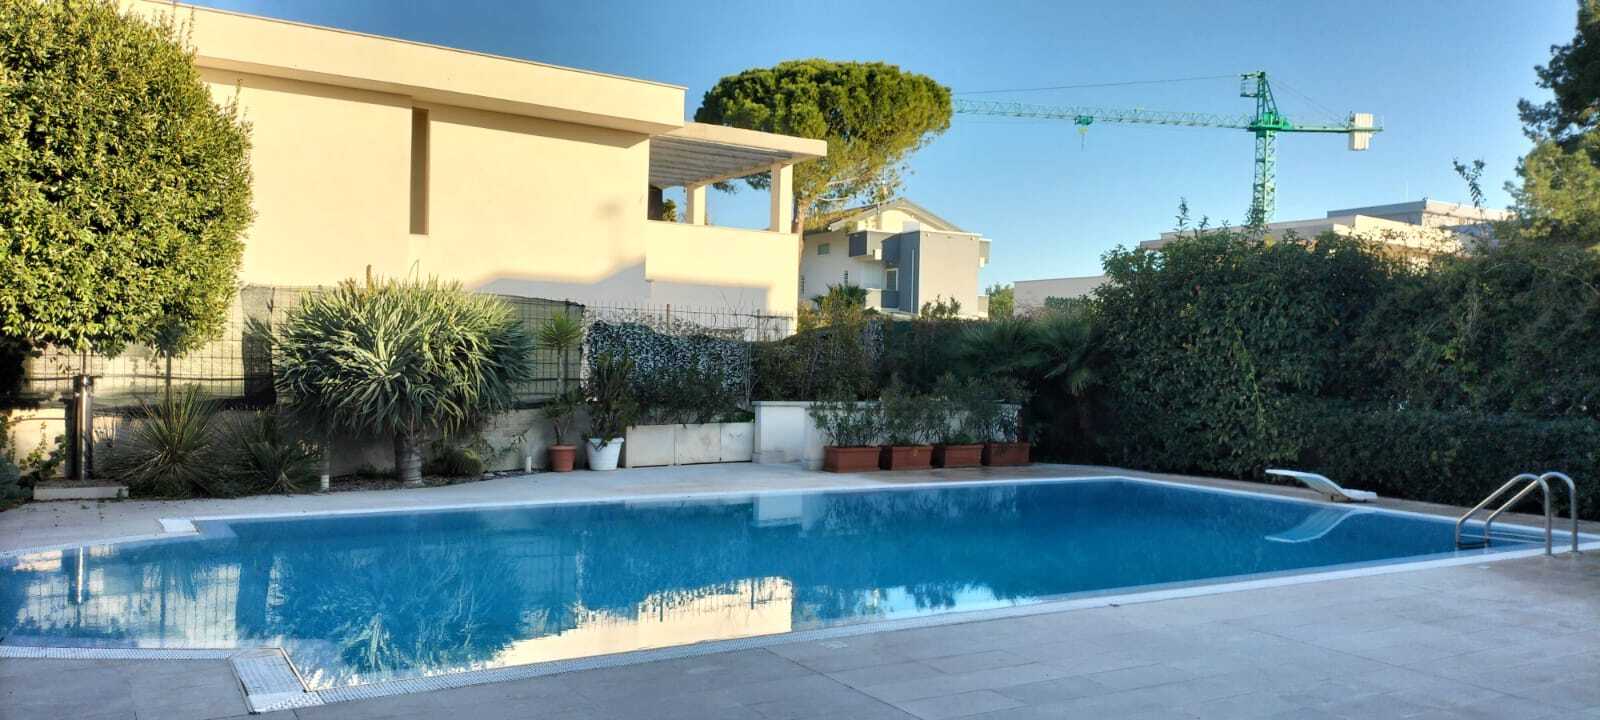 Vendita villa in città Bari Puglia